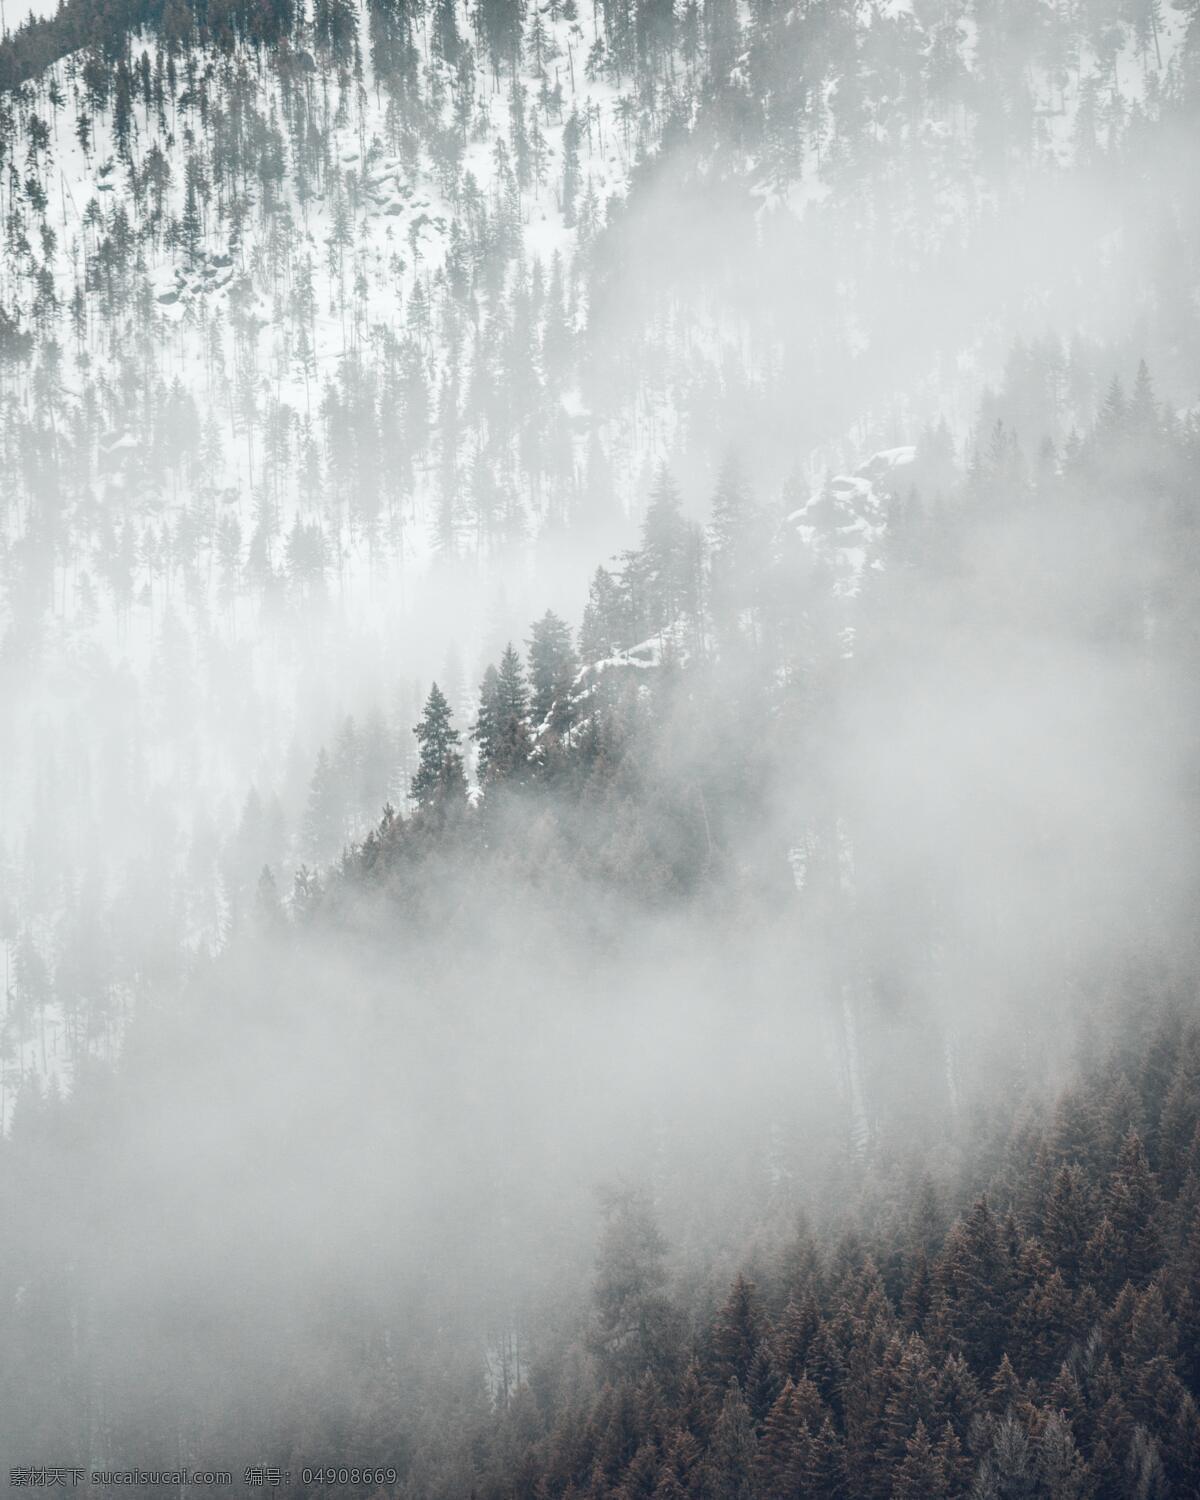 雪山美景 雪山 高山 树木 雾气 雪景 冬季 多娇江山 自然景观 自然风景